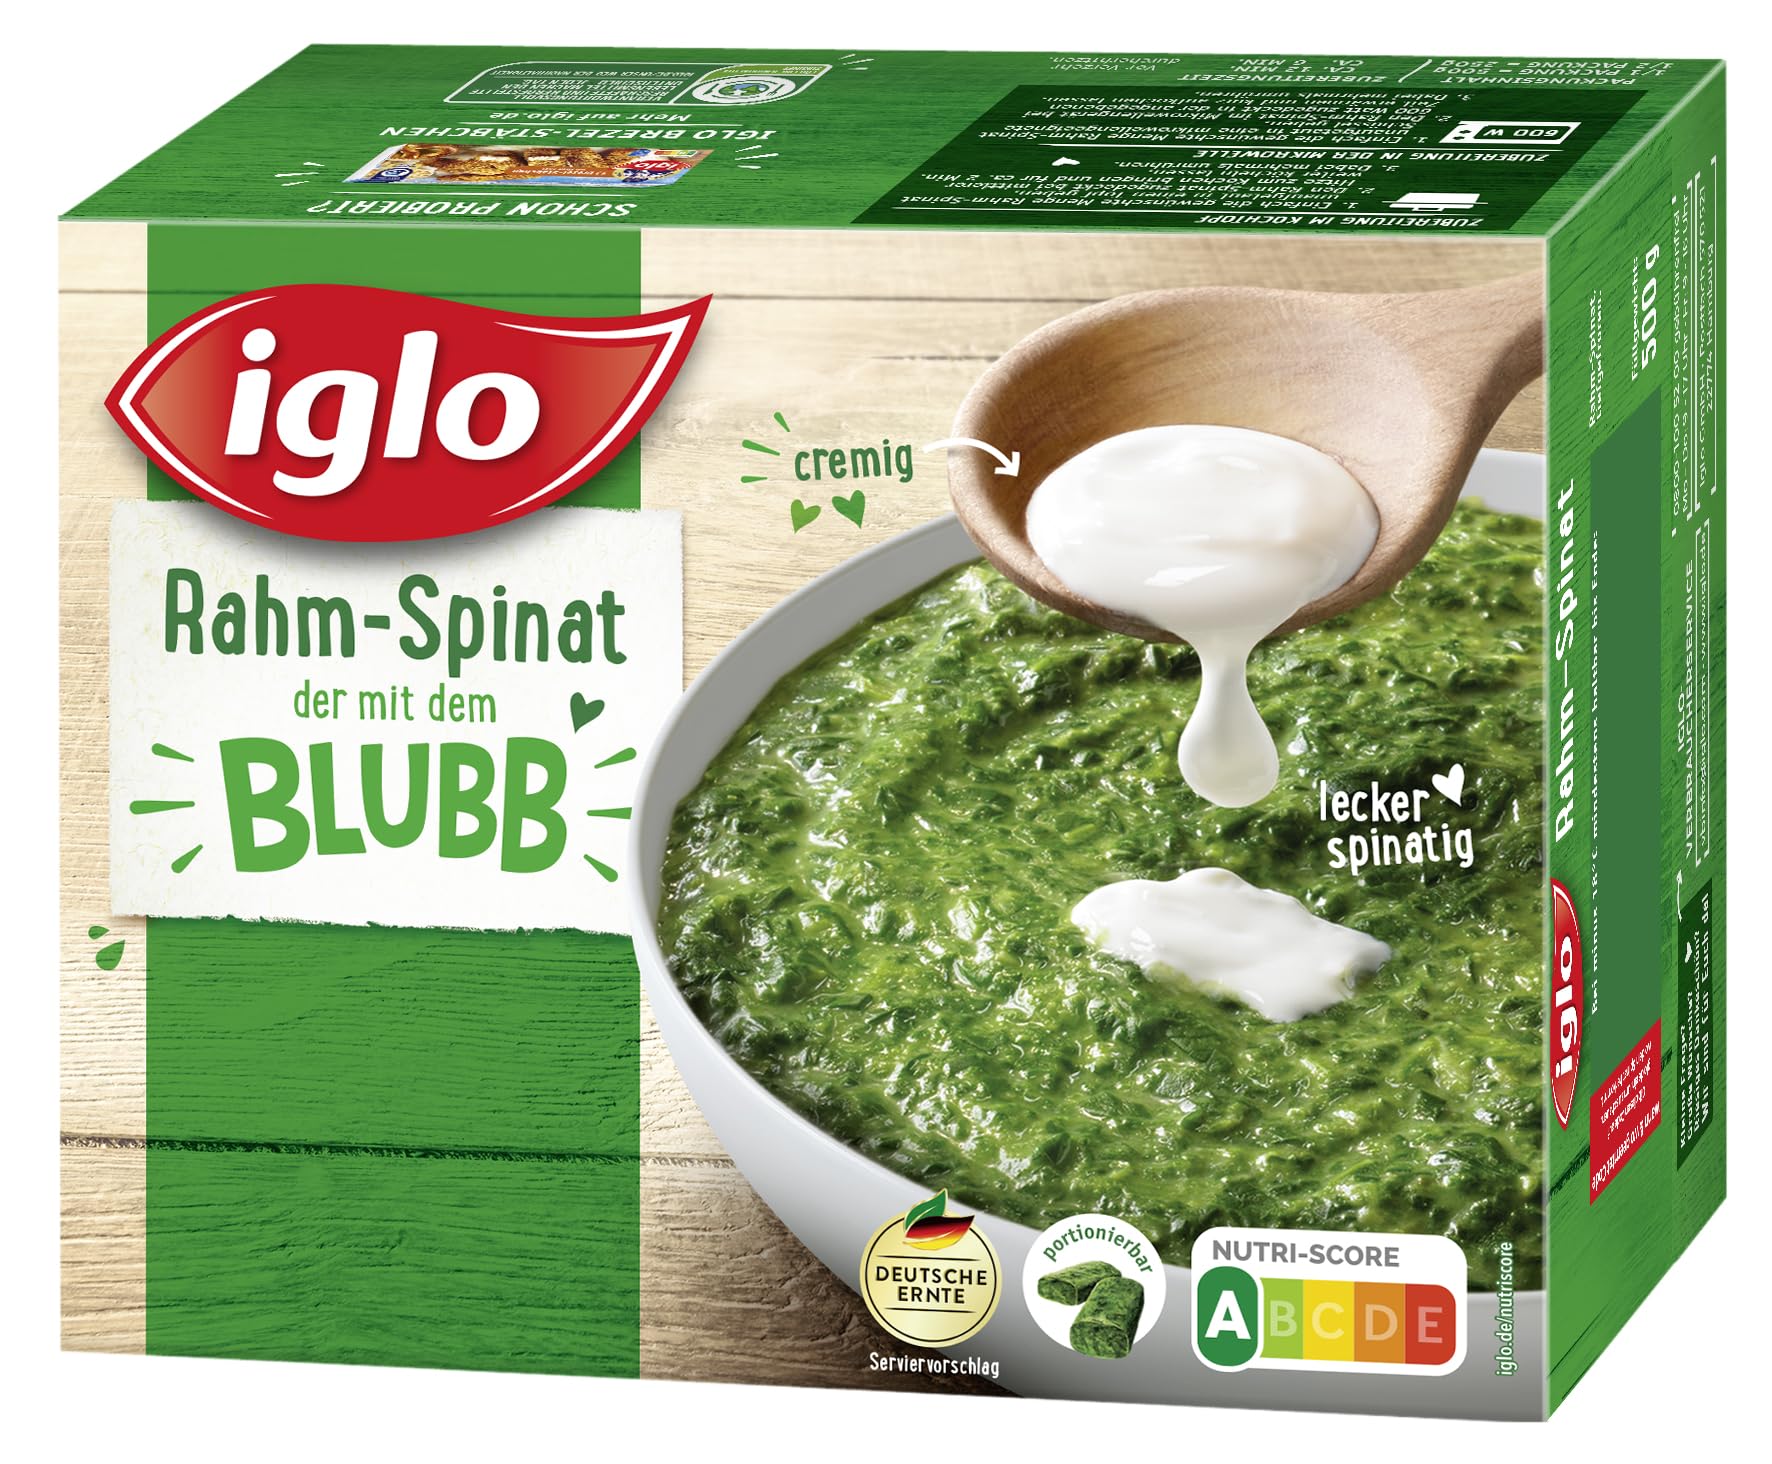 iglo Rahm-Spinat - das Original zubereitet mit dem Blubb - 500 g  (tiefgefroren) : Amazon.de: Lebensmittel & Getränke